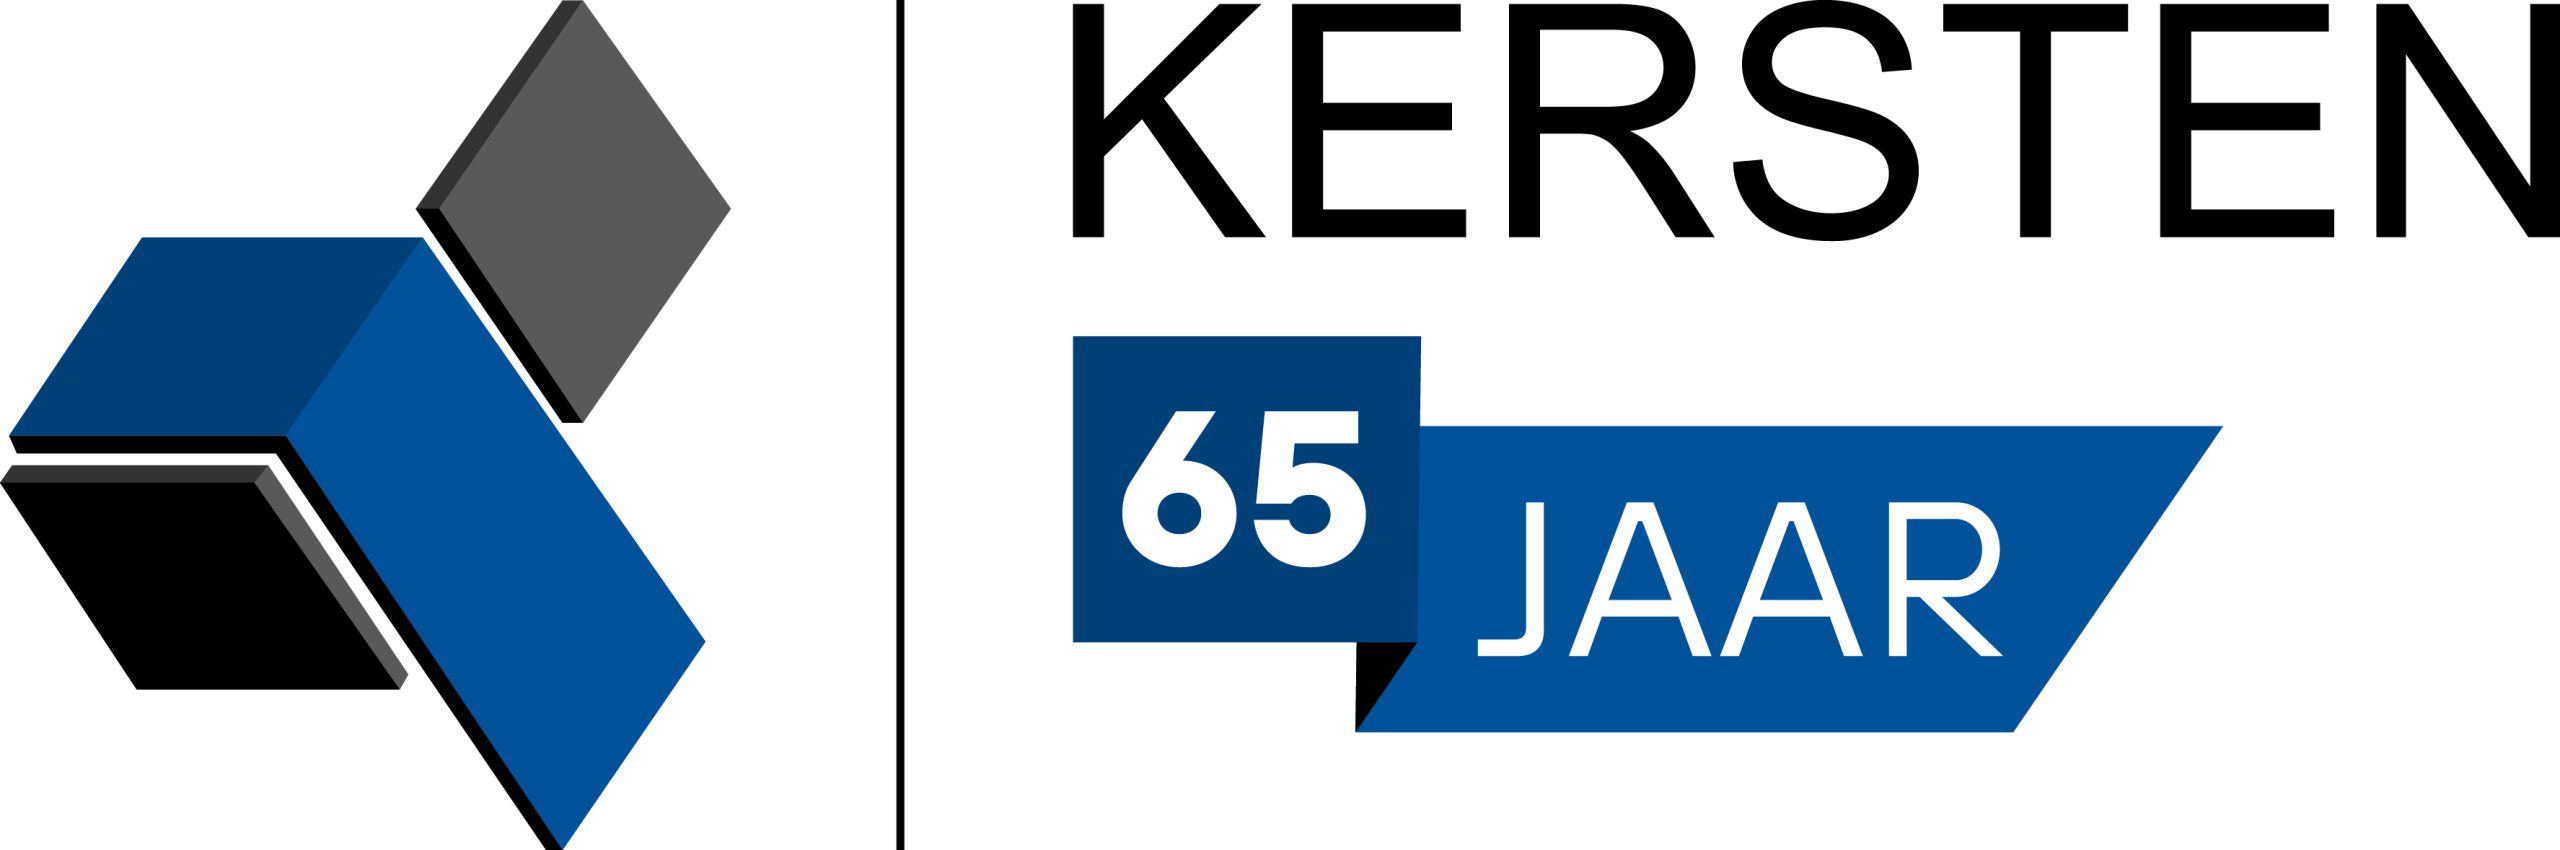 Jubileum logo Kersten 65